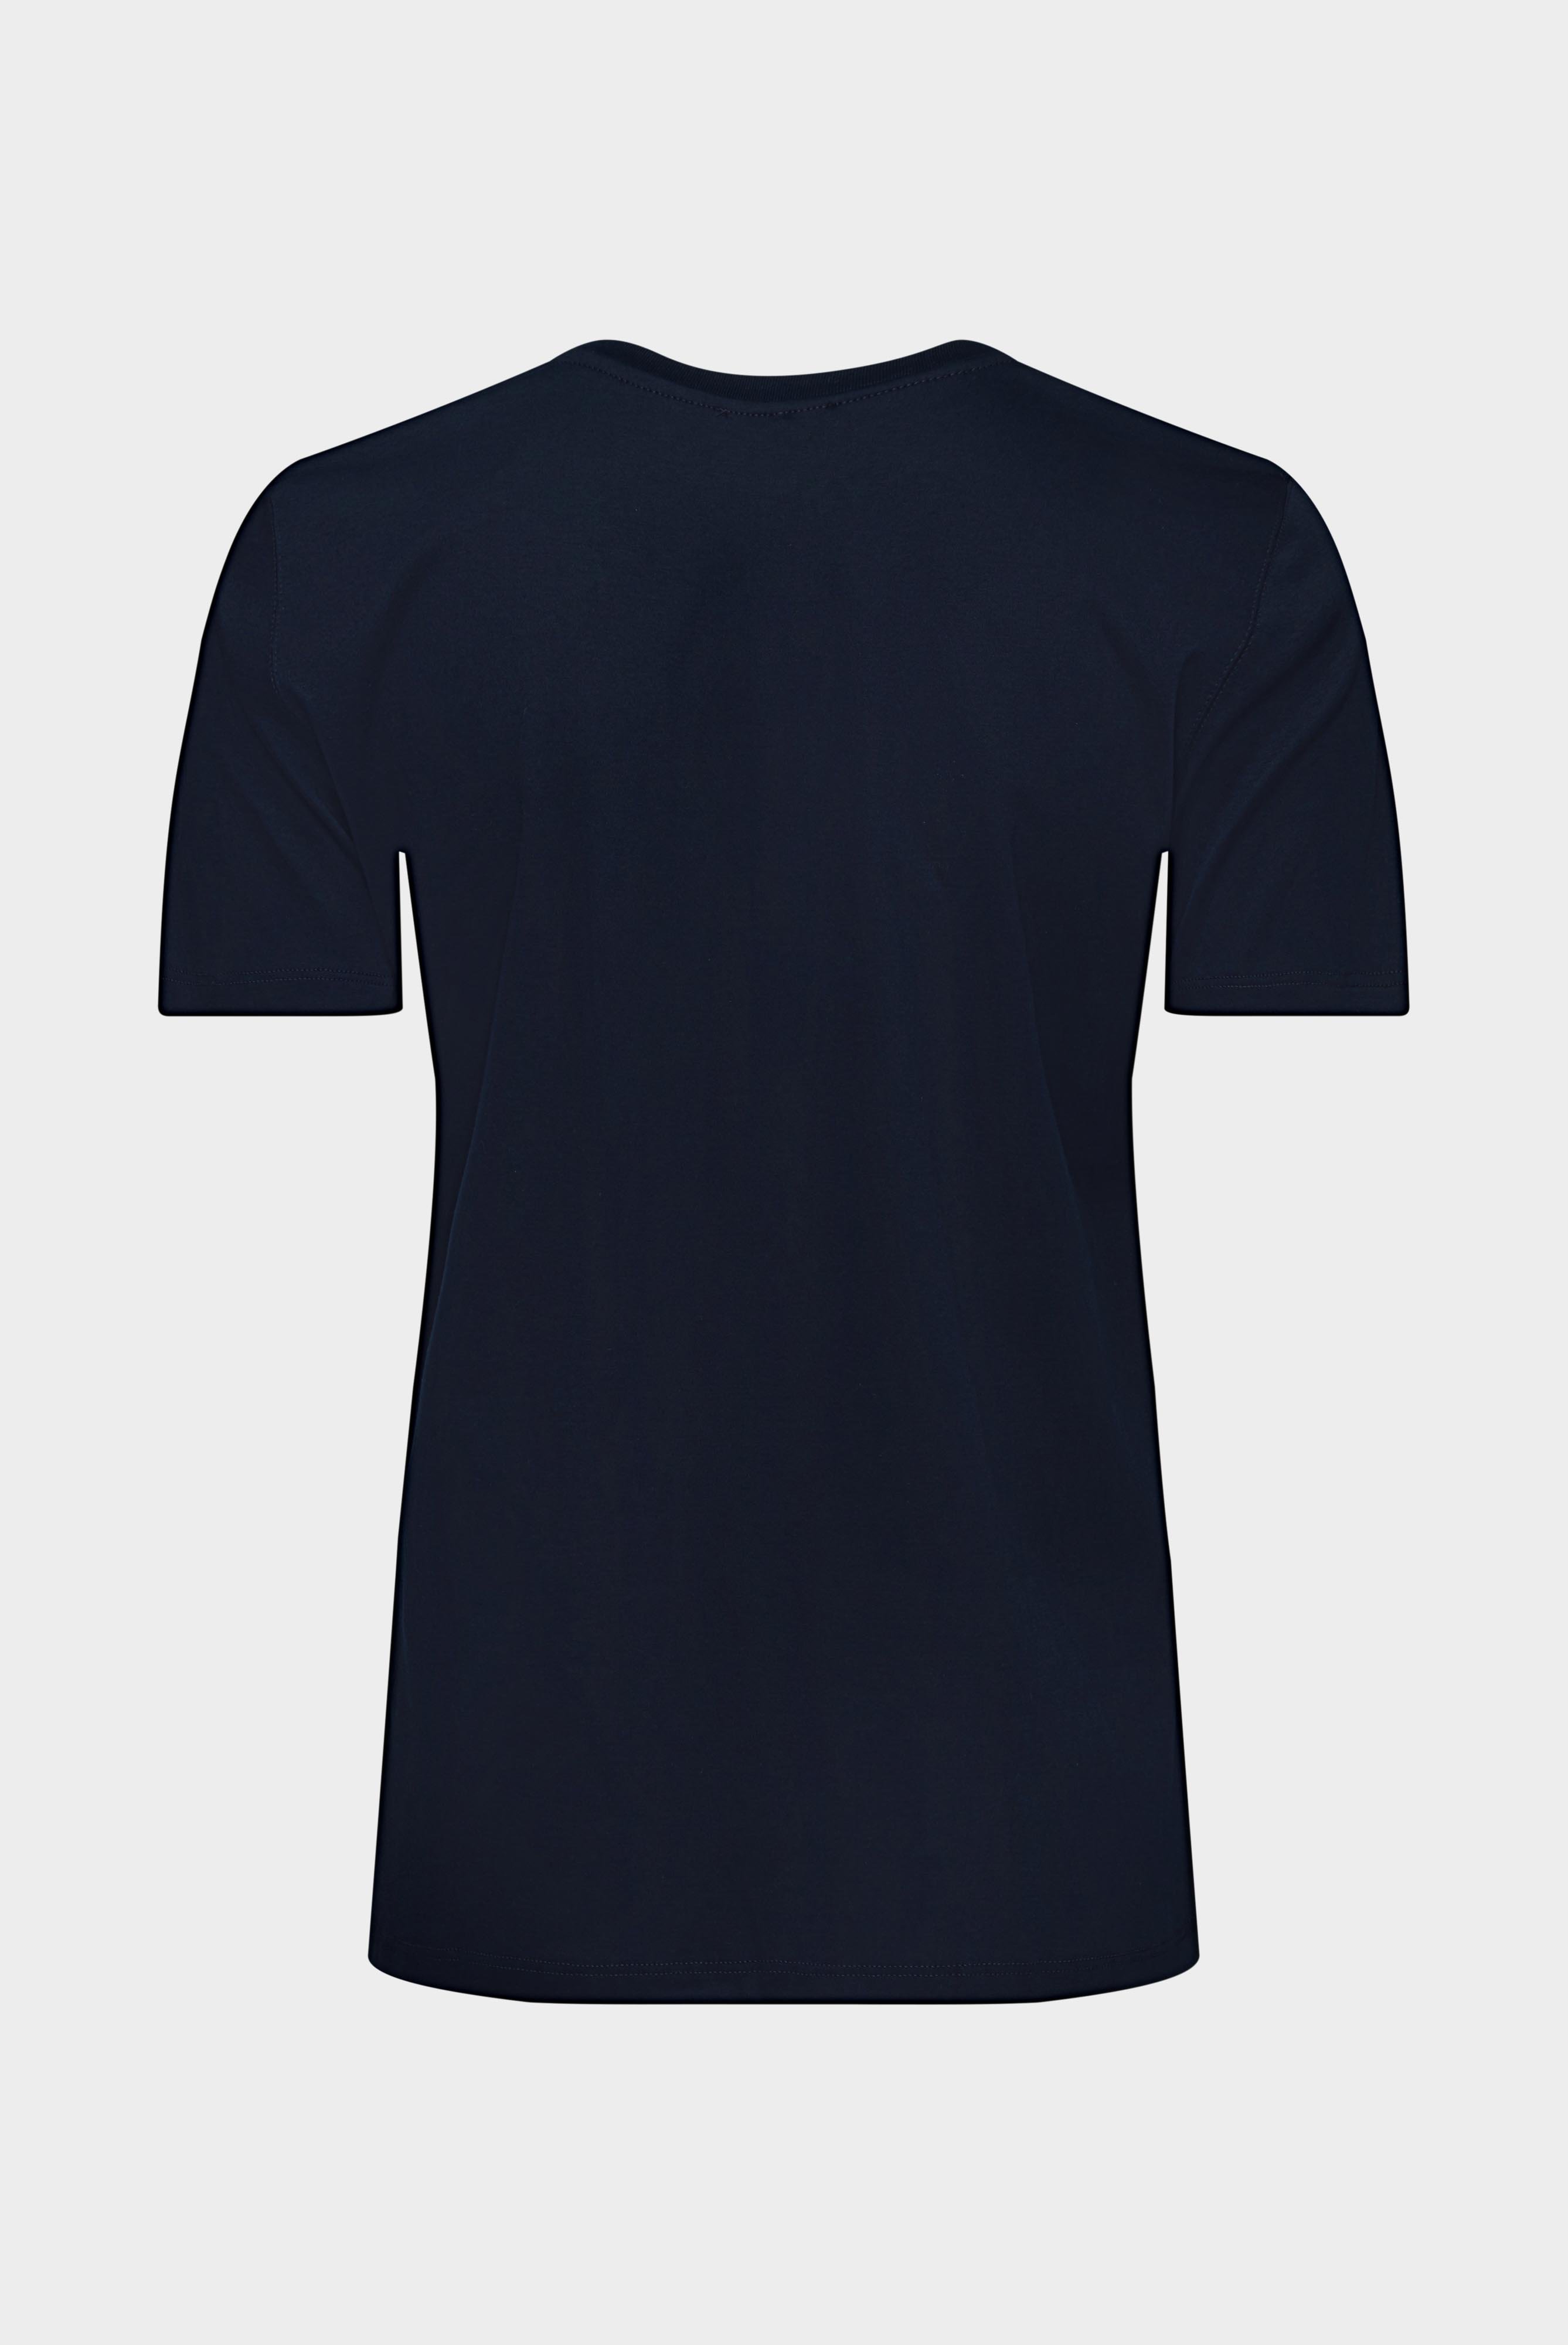 Tops & T-Shirts+Jersey T-Shirt+05.6384.18.180031.790.44